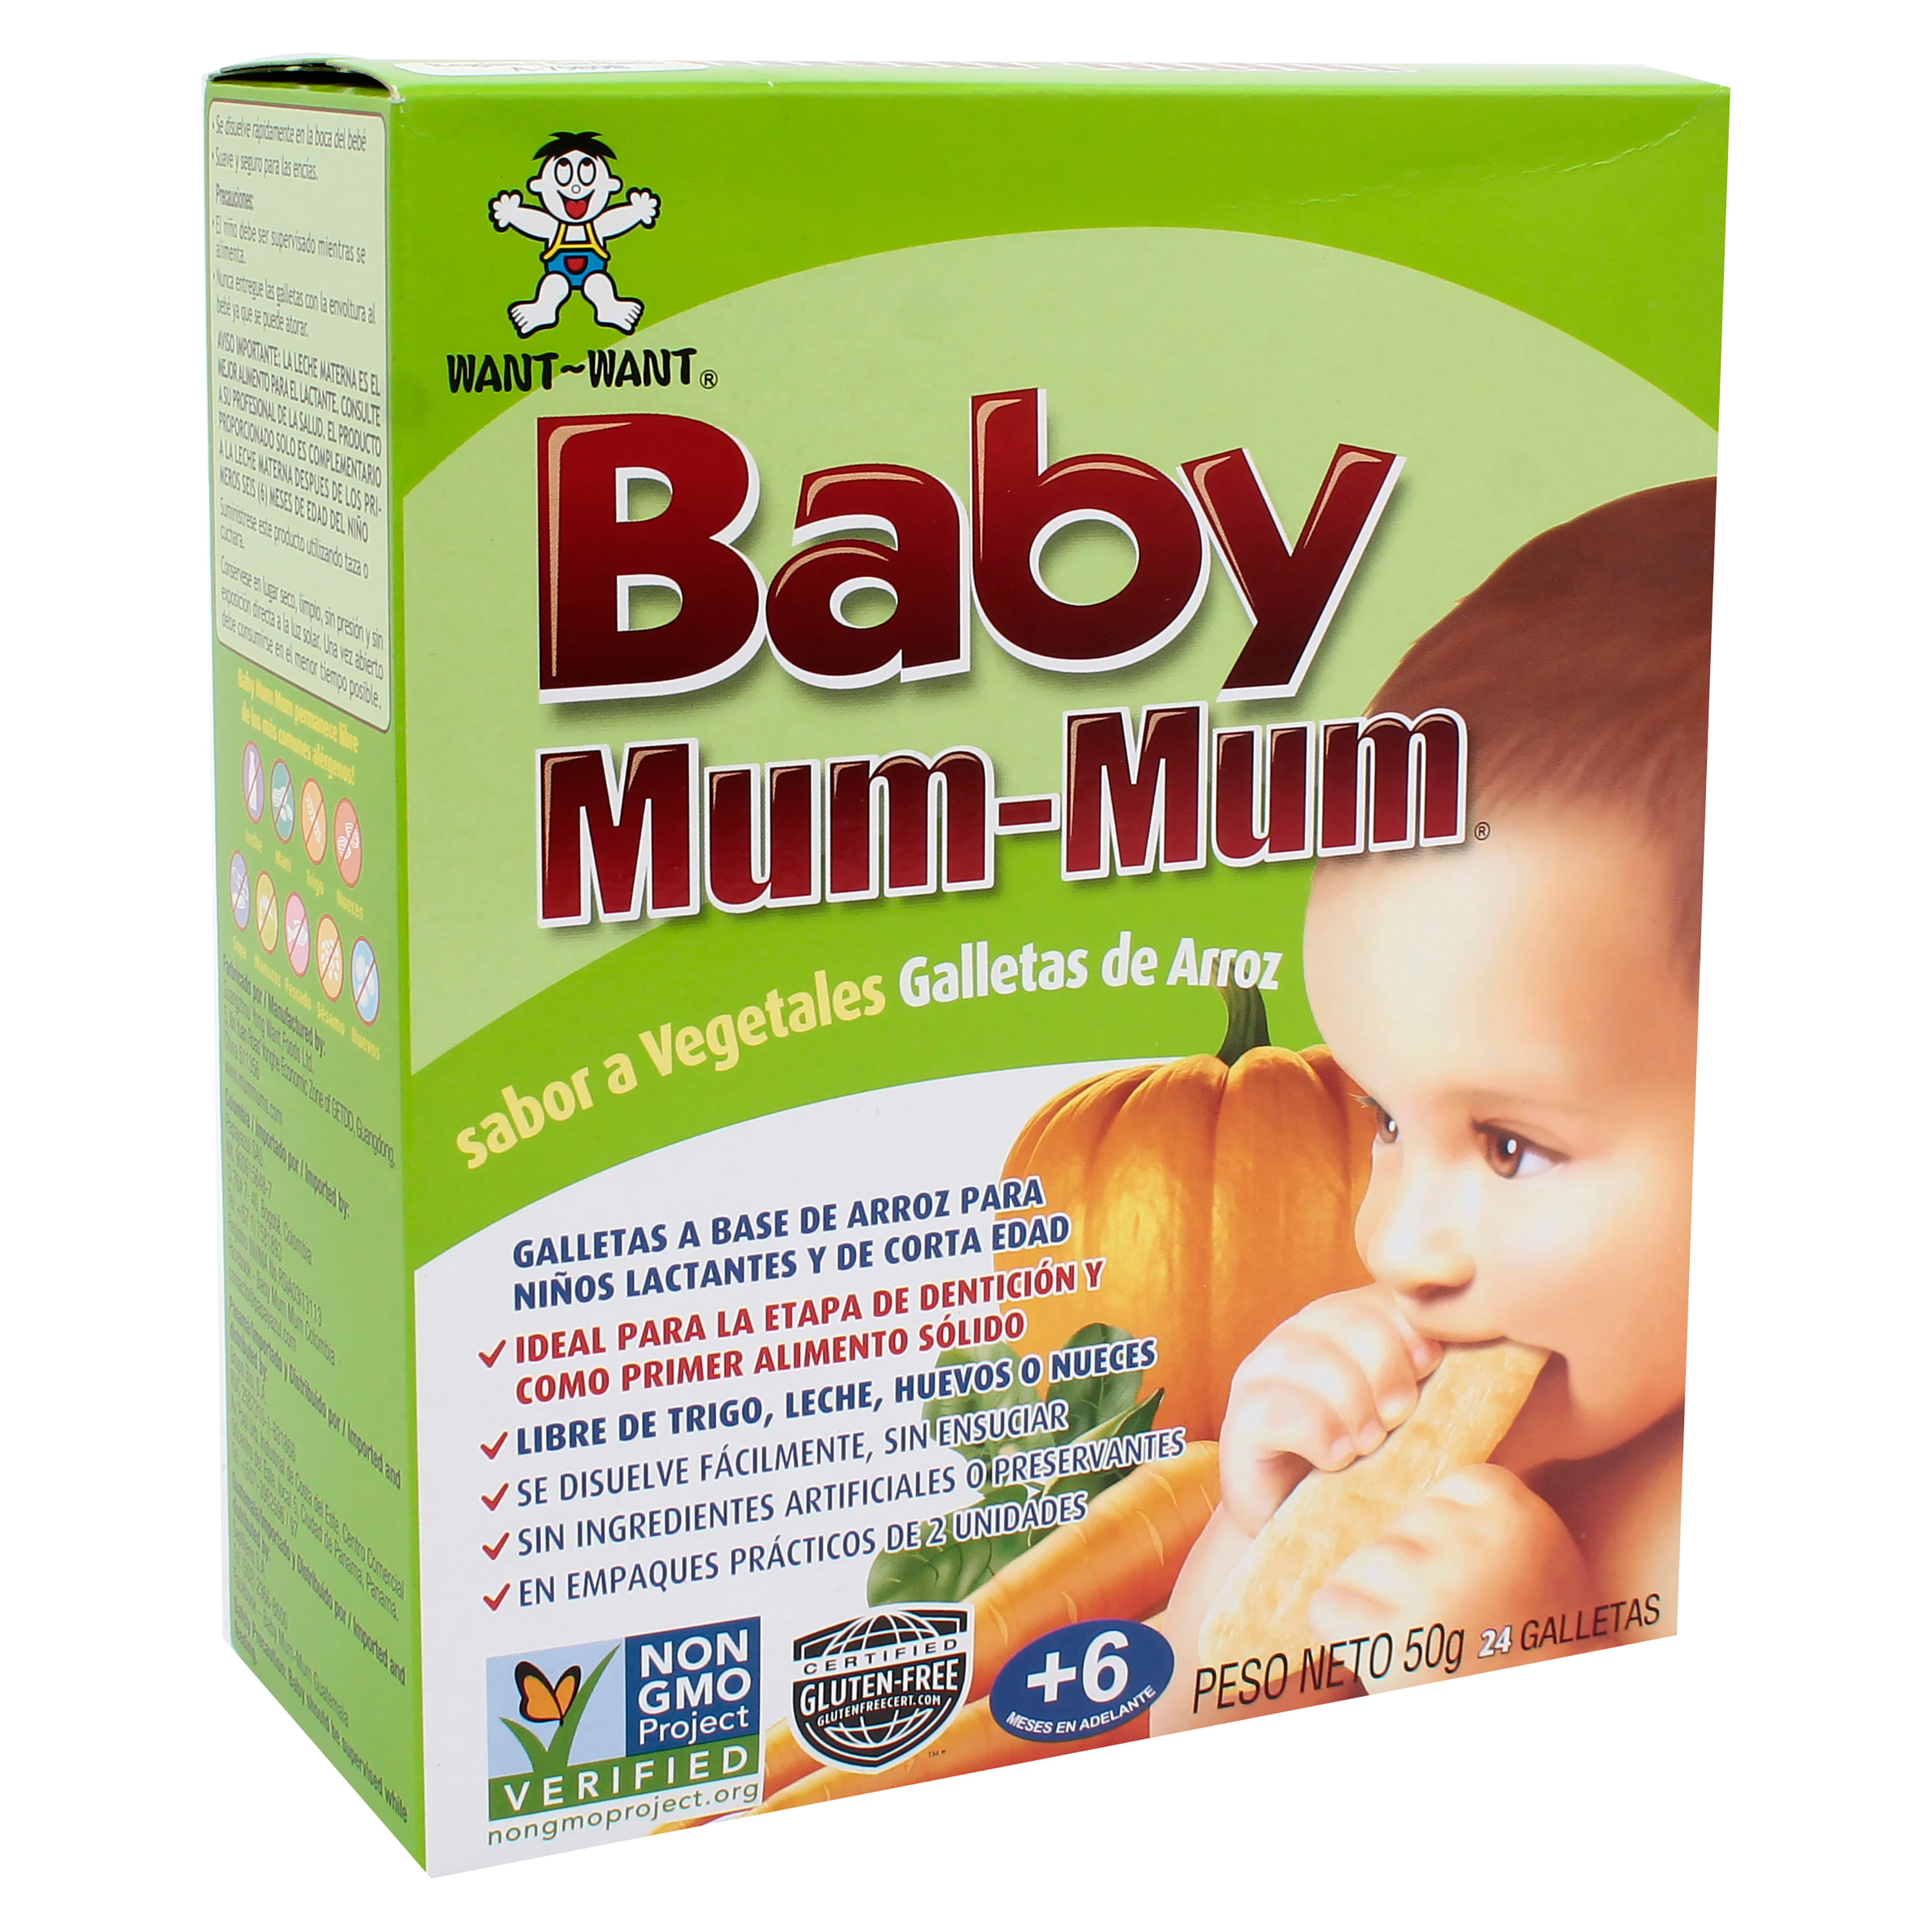 Comprar Galletas De Arroz Baby Mum Mum Con Vegetales, Walmart Guatemala -  Maxi Despensa